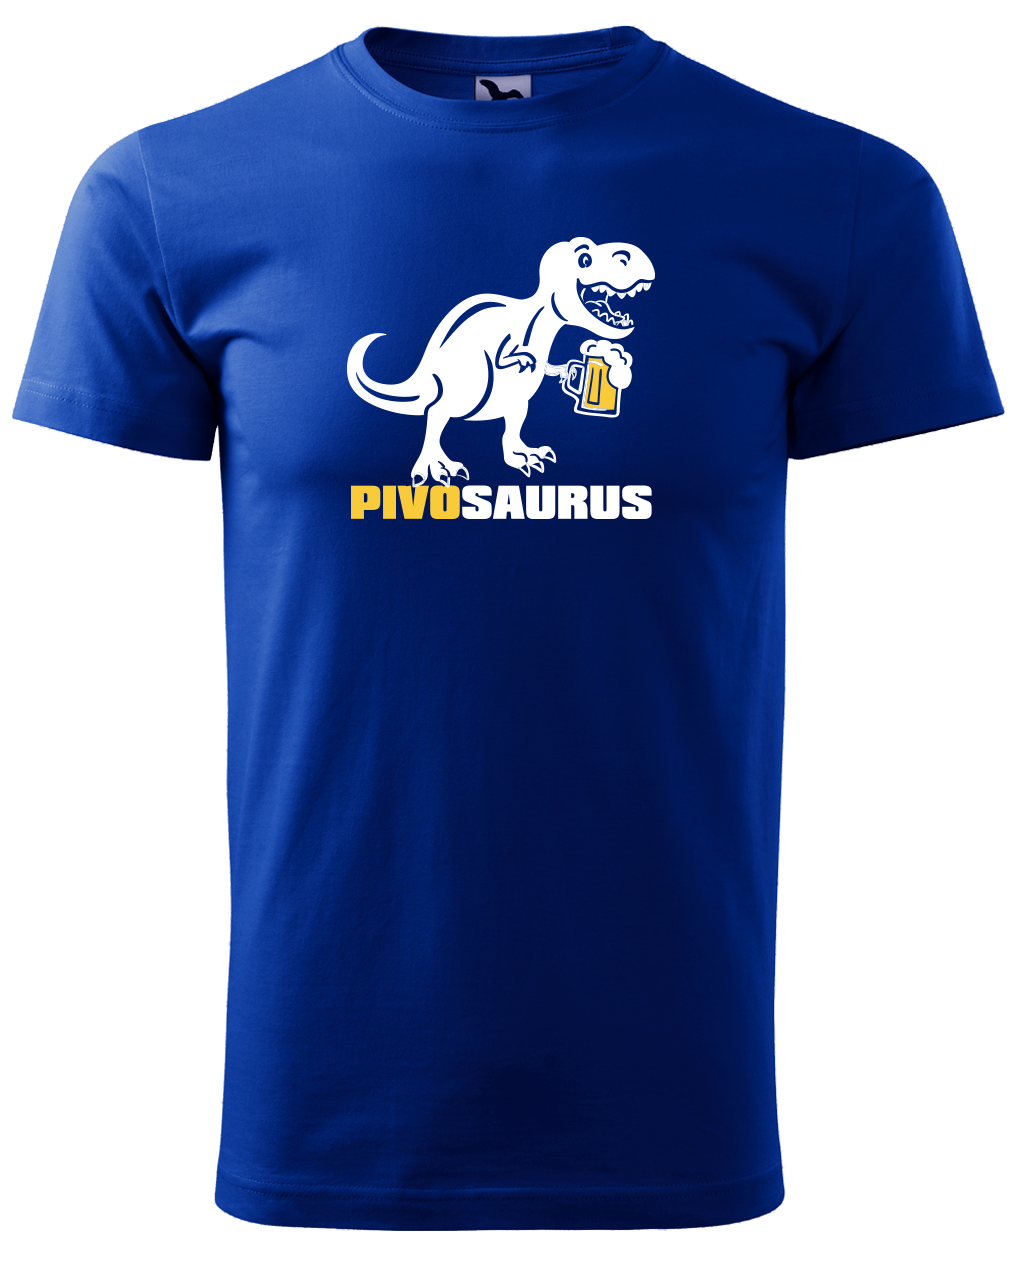 Vtipné tričko - Pivosaurus Velikost: S, Barva: Královská modrá (05)